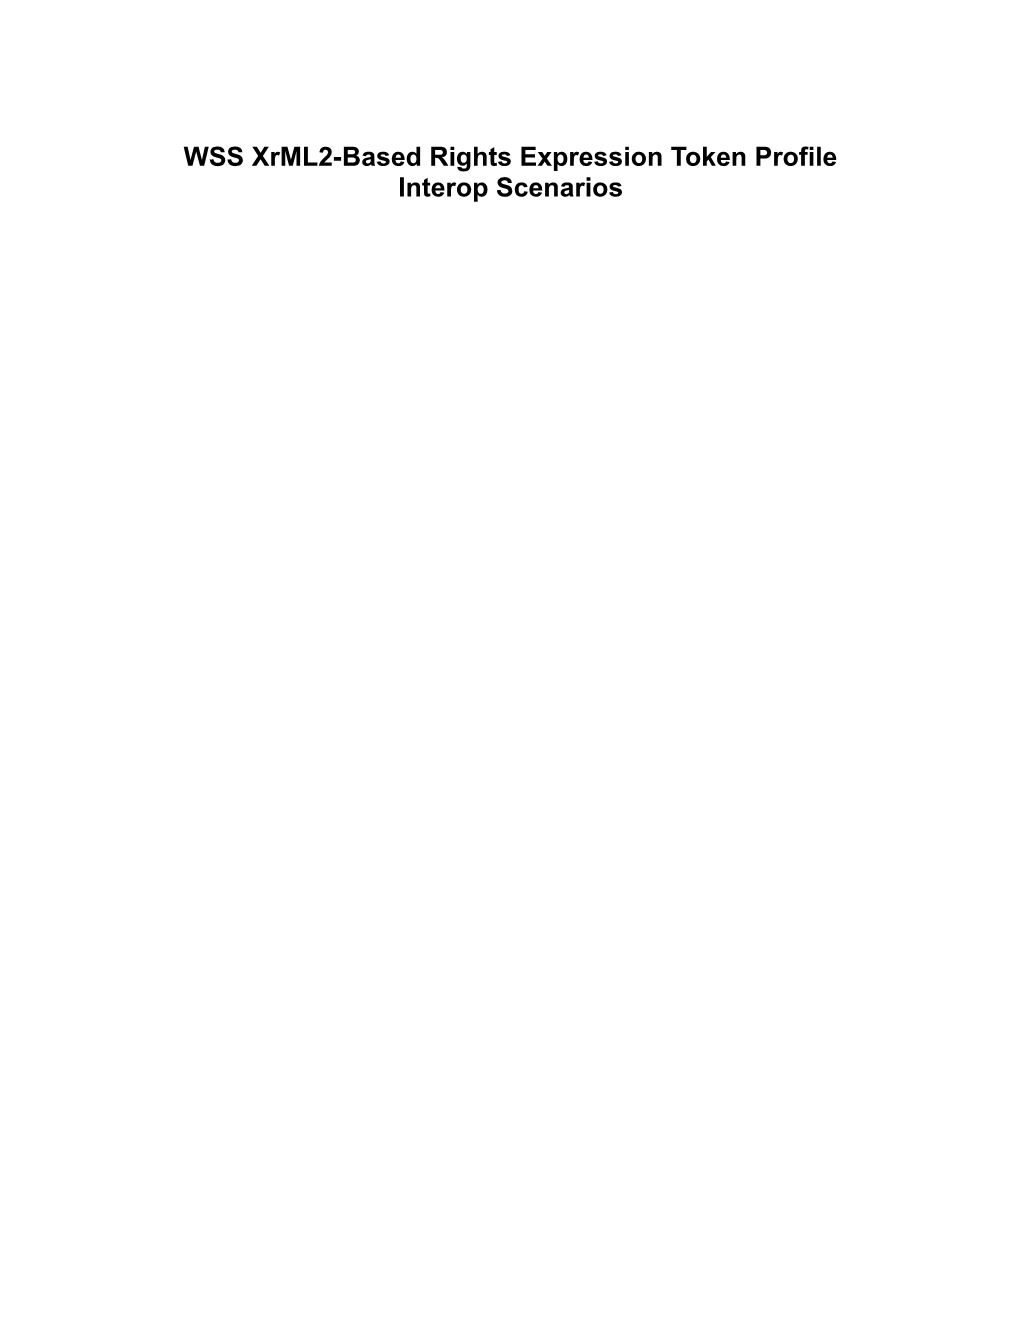 WSS Xrml2-Based Rights Expression Token Profile Interop Scenarios